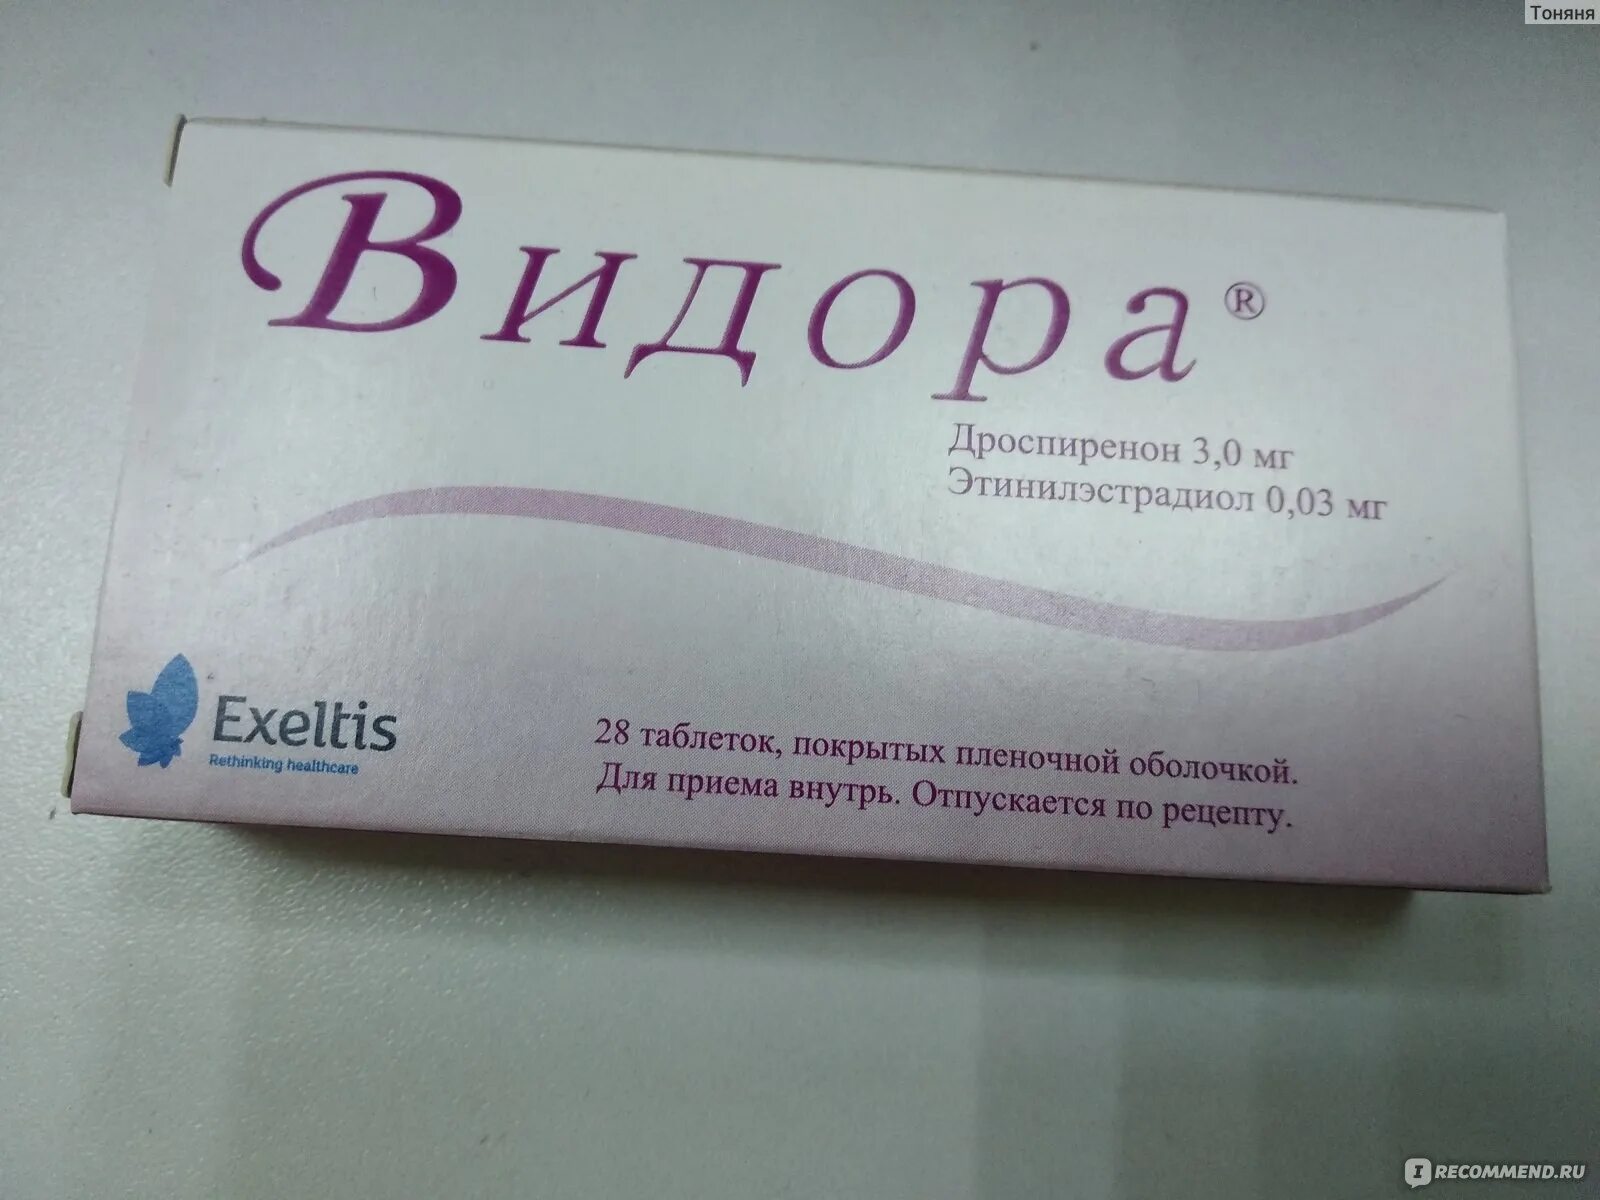 Видора инструкция. Противозачаточные Видора. Видора противозачаточный препарат. Таблетки контрацептивы Видора 21+7. Видора таблетки, покрытые пленочной оболочкой.